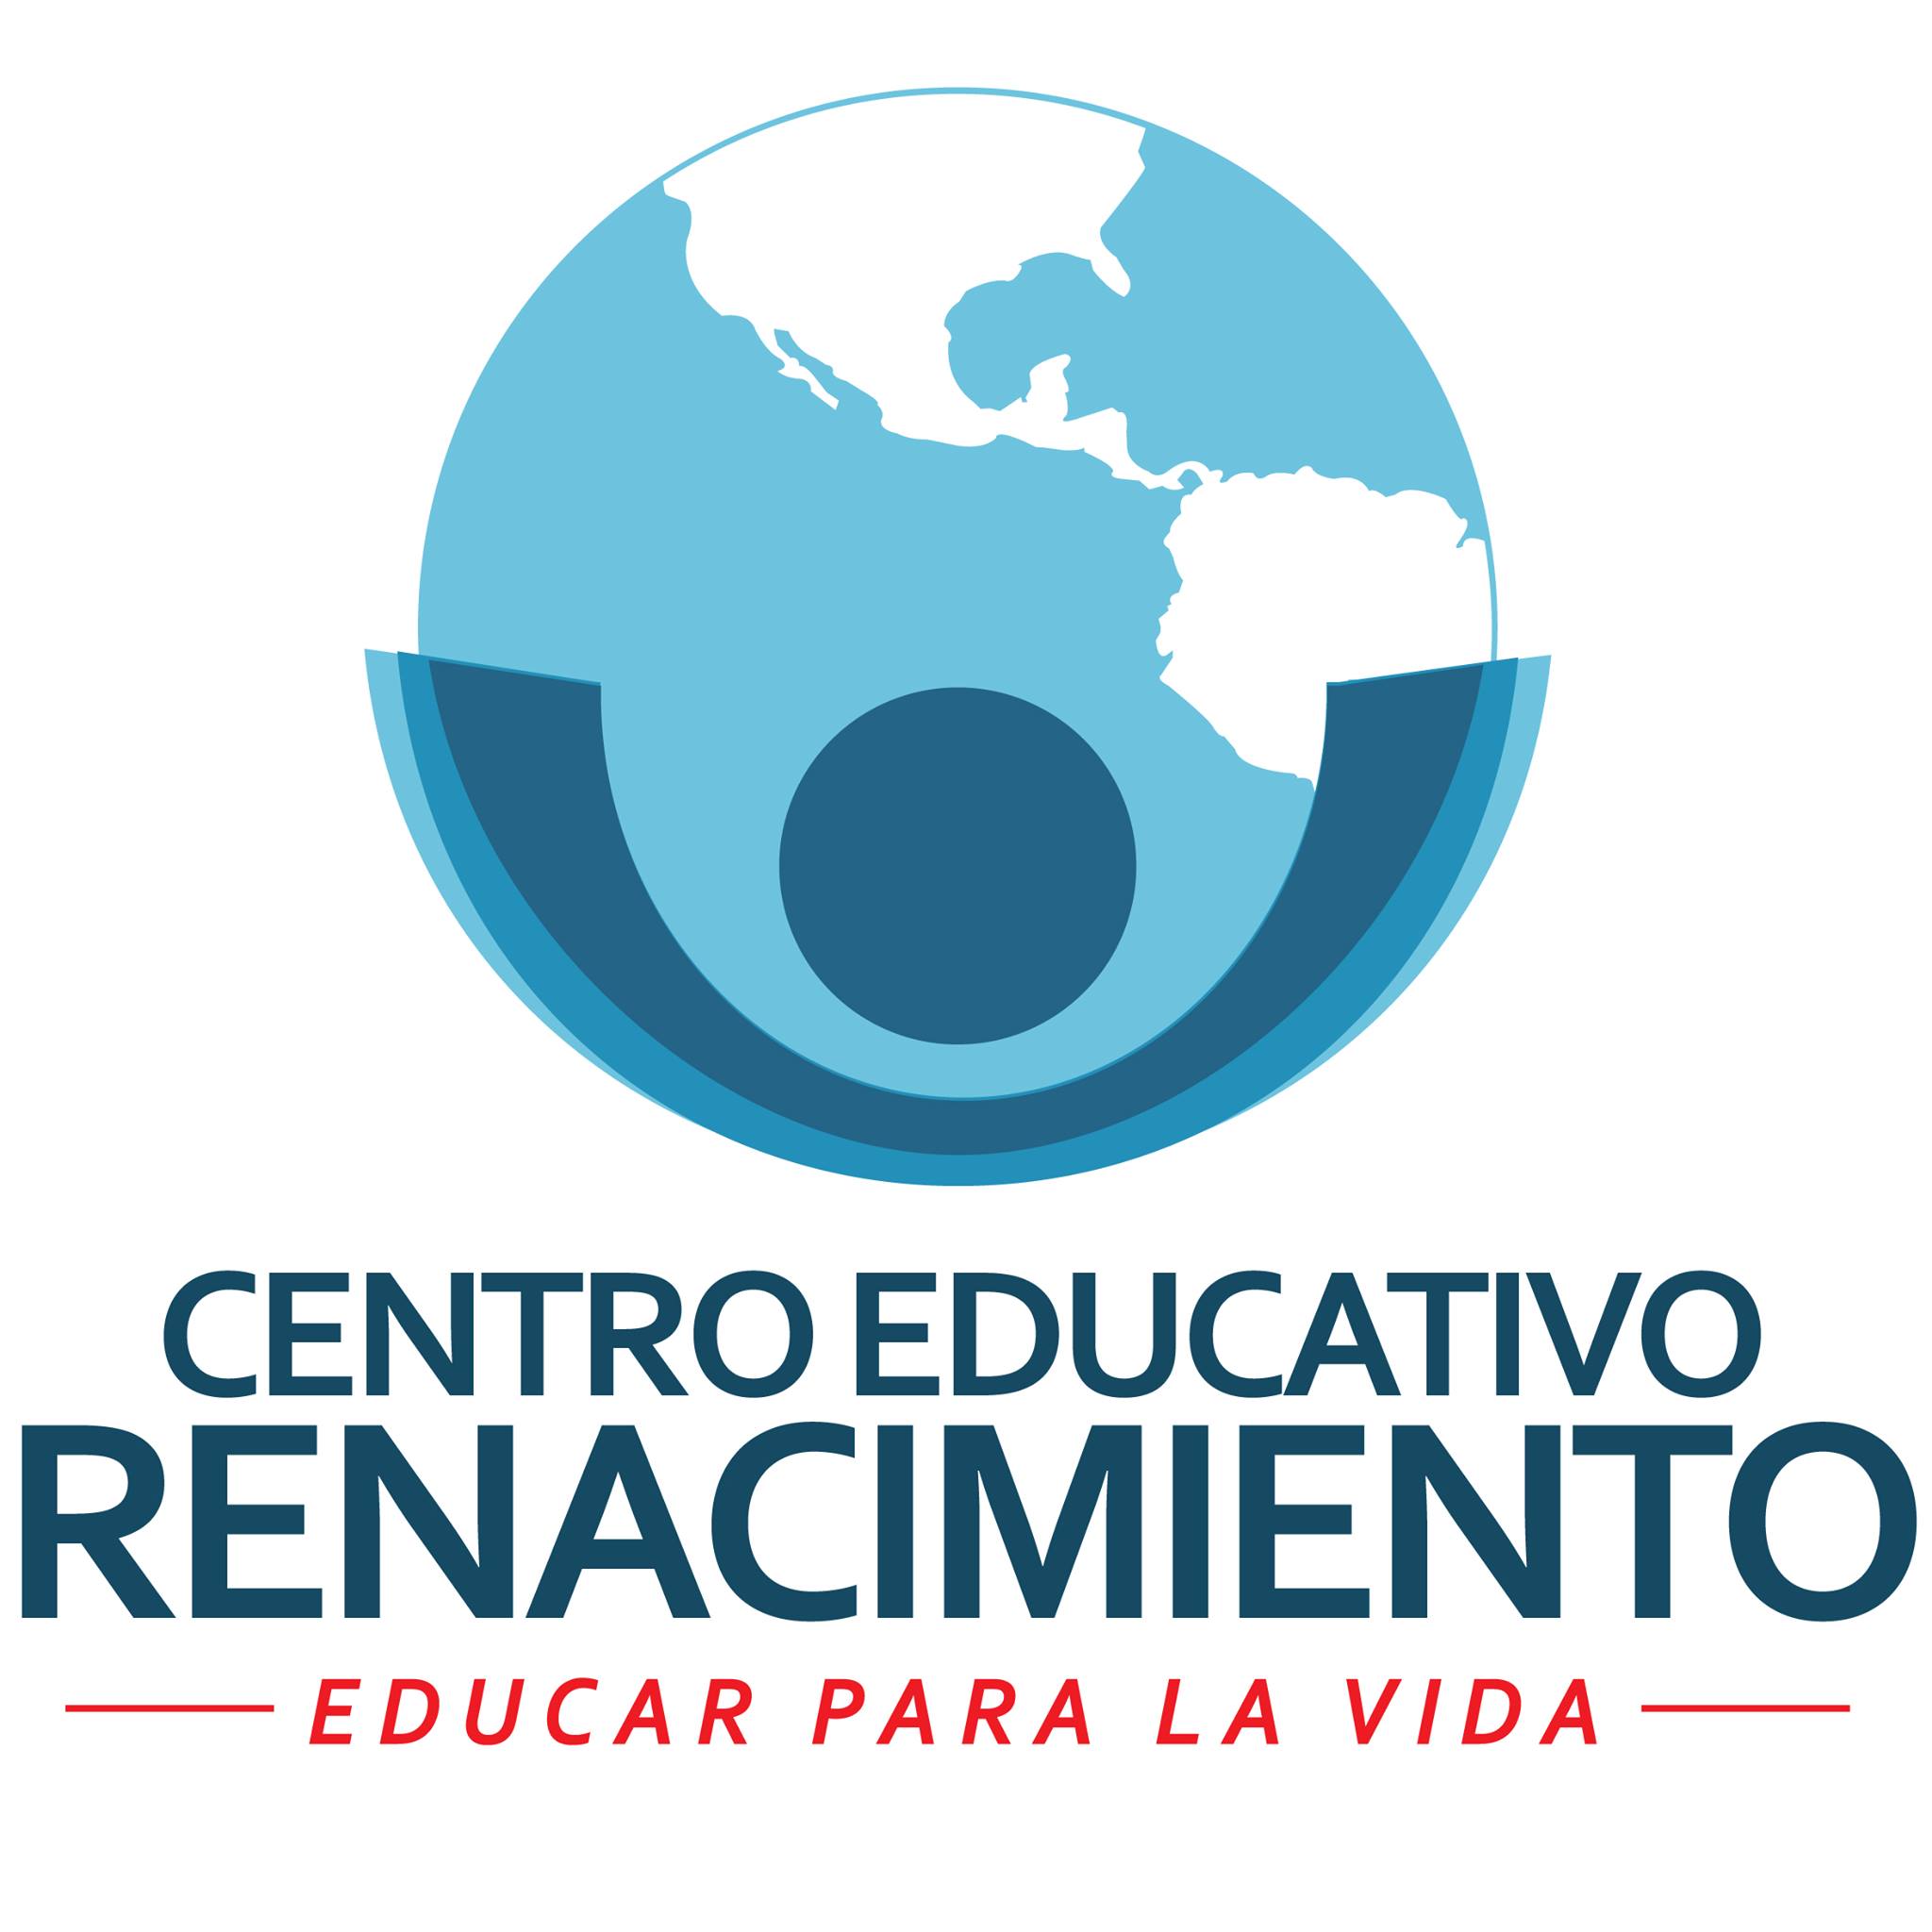 Ficha tecnica de Centro Educativo Renacimiento